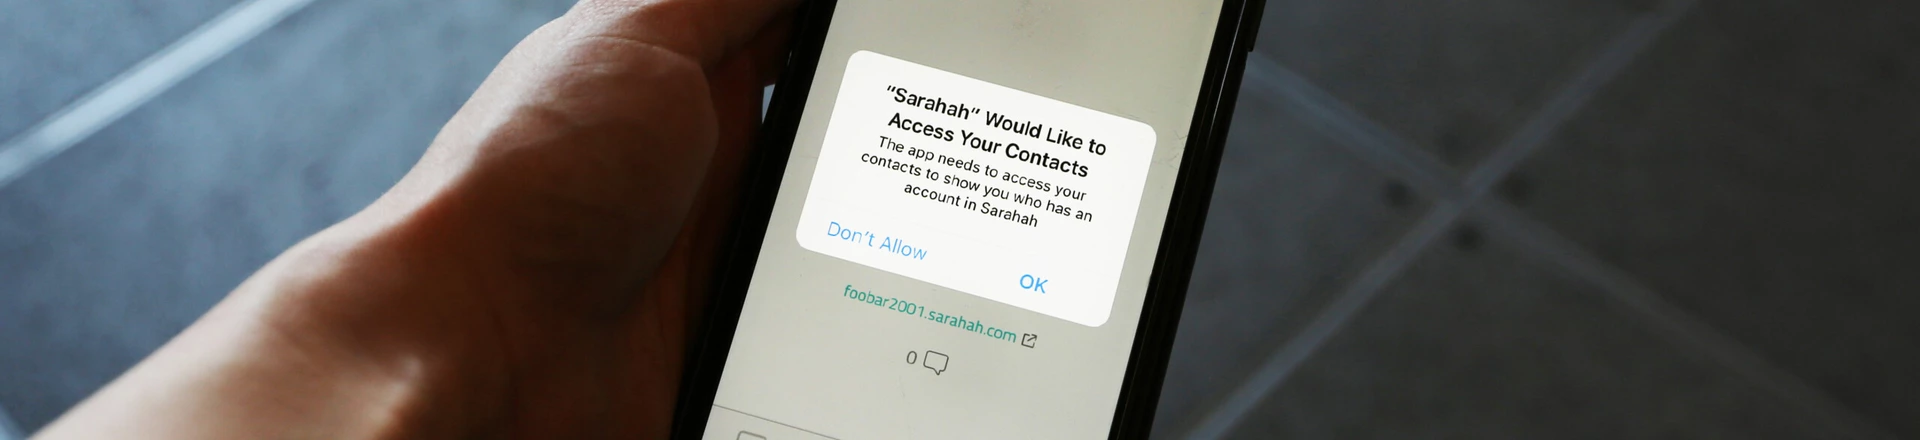 App do momento, Sarahah se apropria sorrateiramente da sua lista de contatos